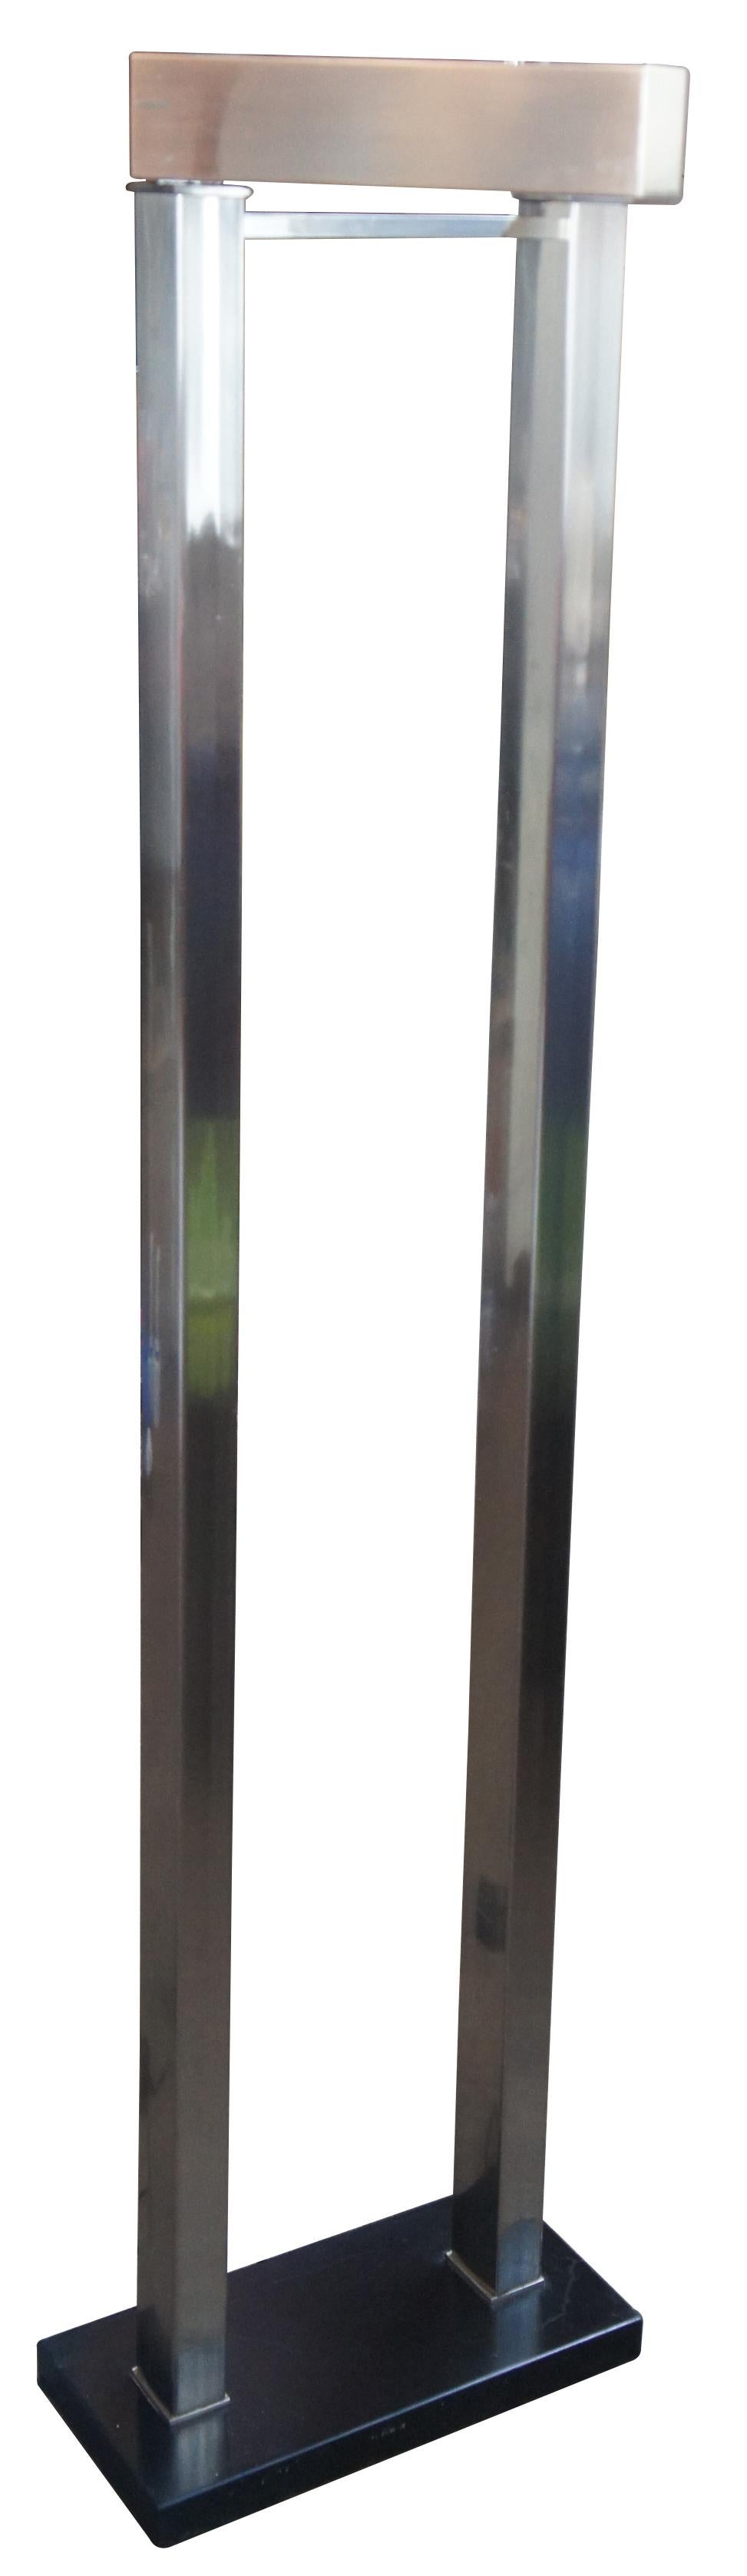 Une lampe pivotante contemporaine en métal par The Natural Light Co. Il présente une forme tubulaire moderne avec une base noire. Mesure : 61